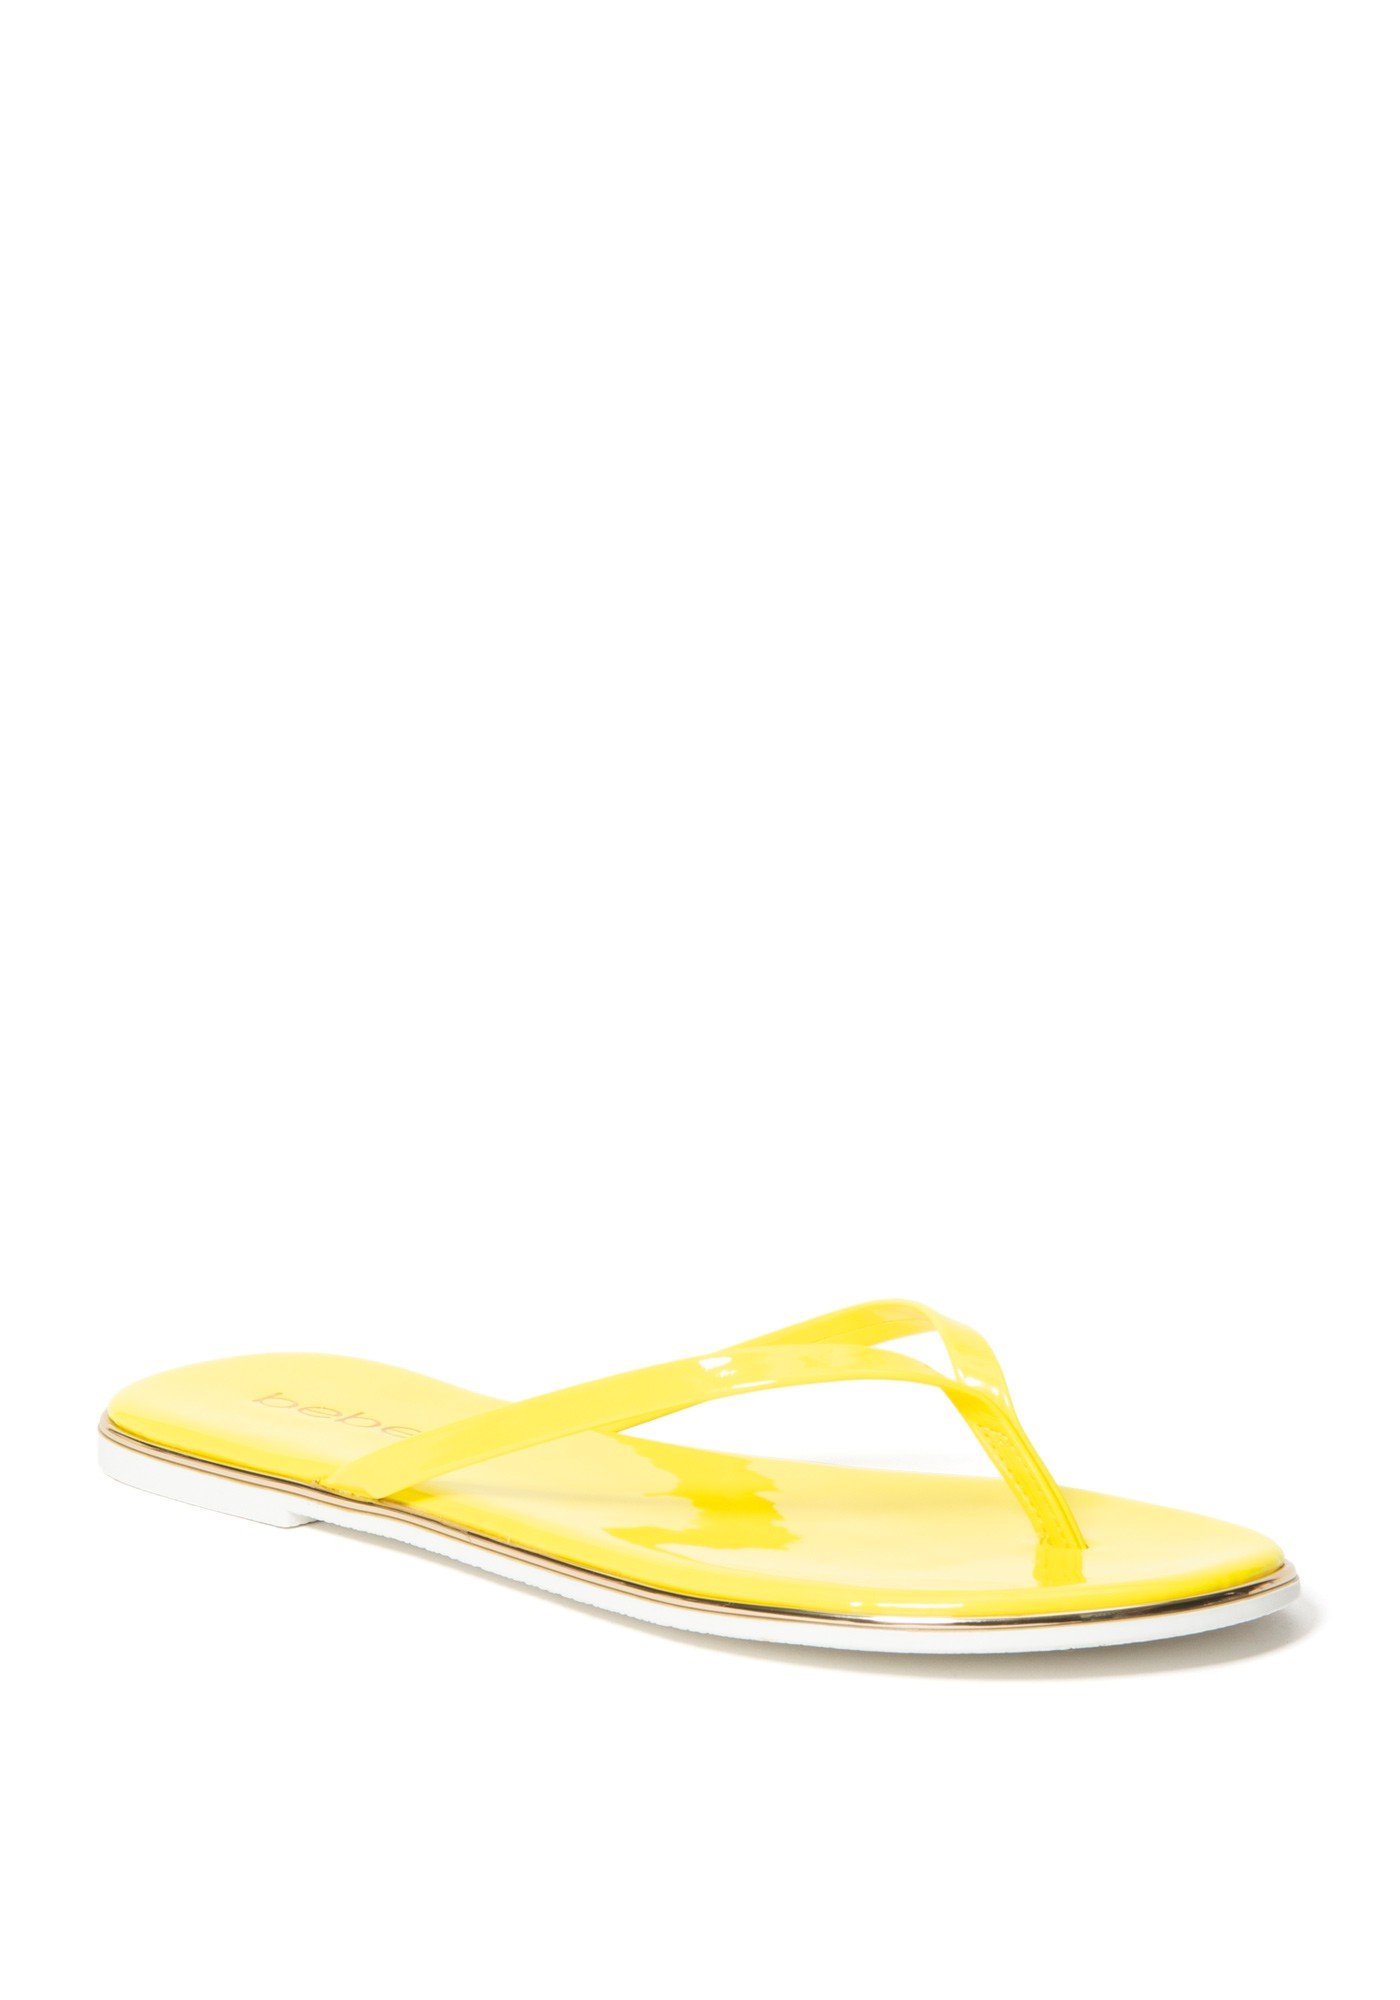 Bebe Women's Ilistra-W Flip Flops, Size 7 in Neon Yellow Synthetic